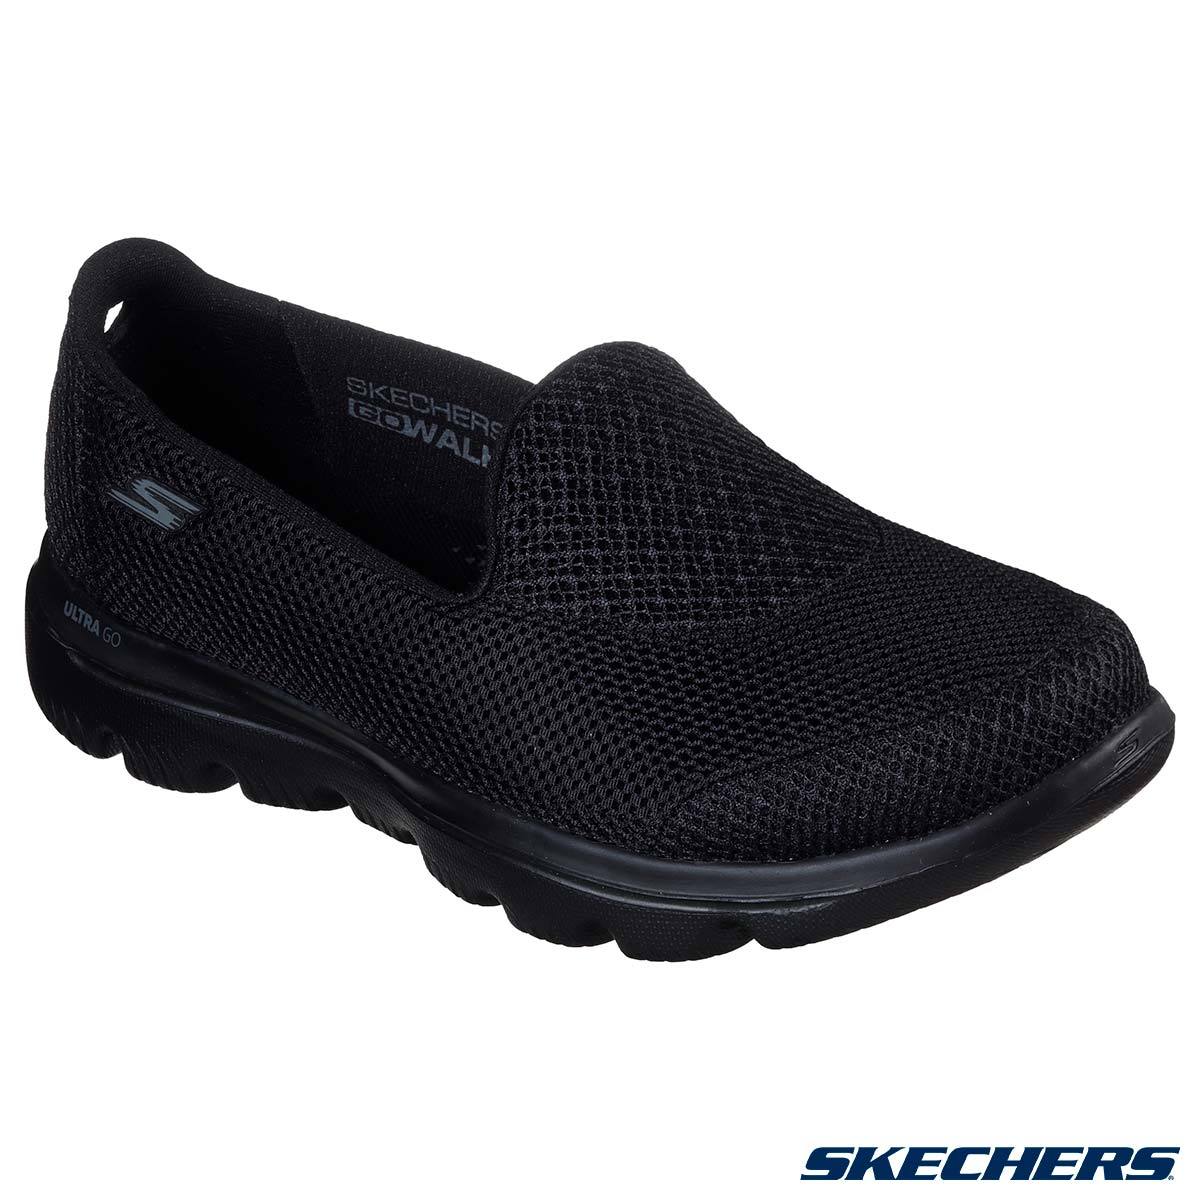 Skechers Evolution Women's Shoes in Black, Size 7 ...